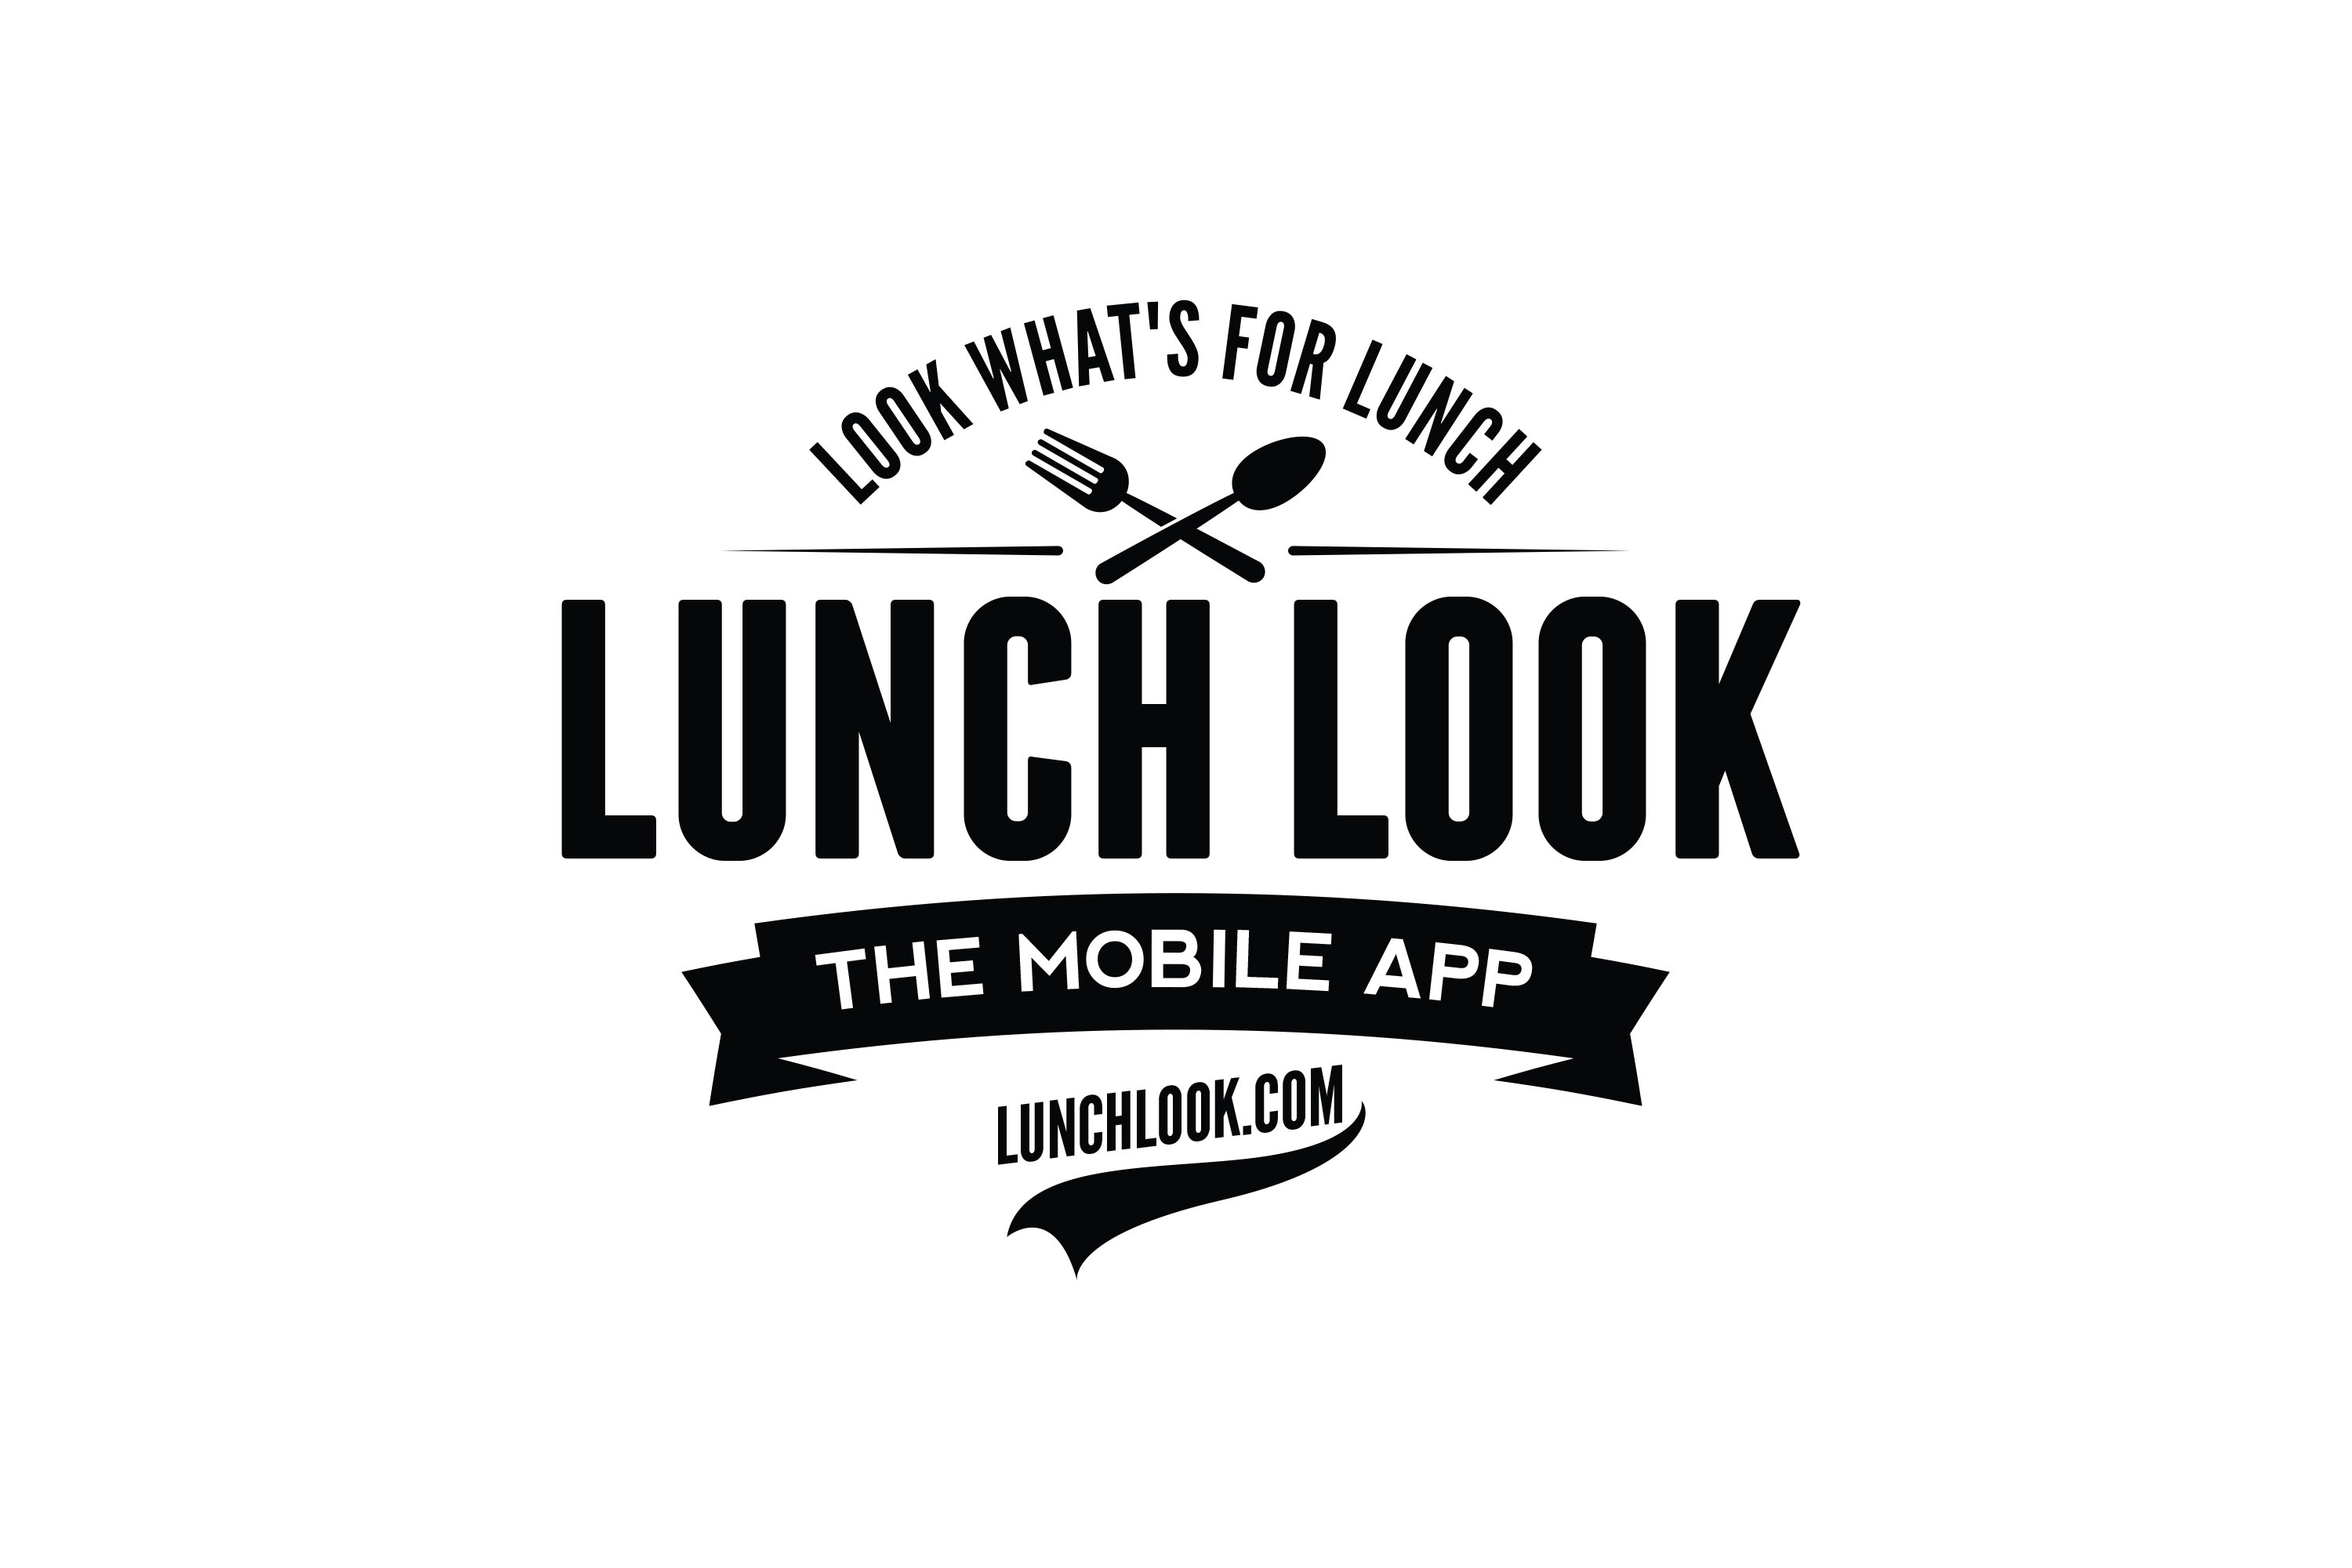 LunchLook.com